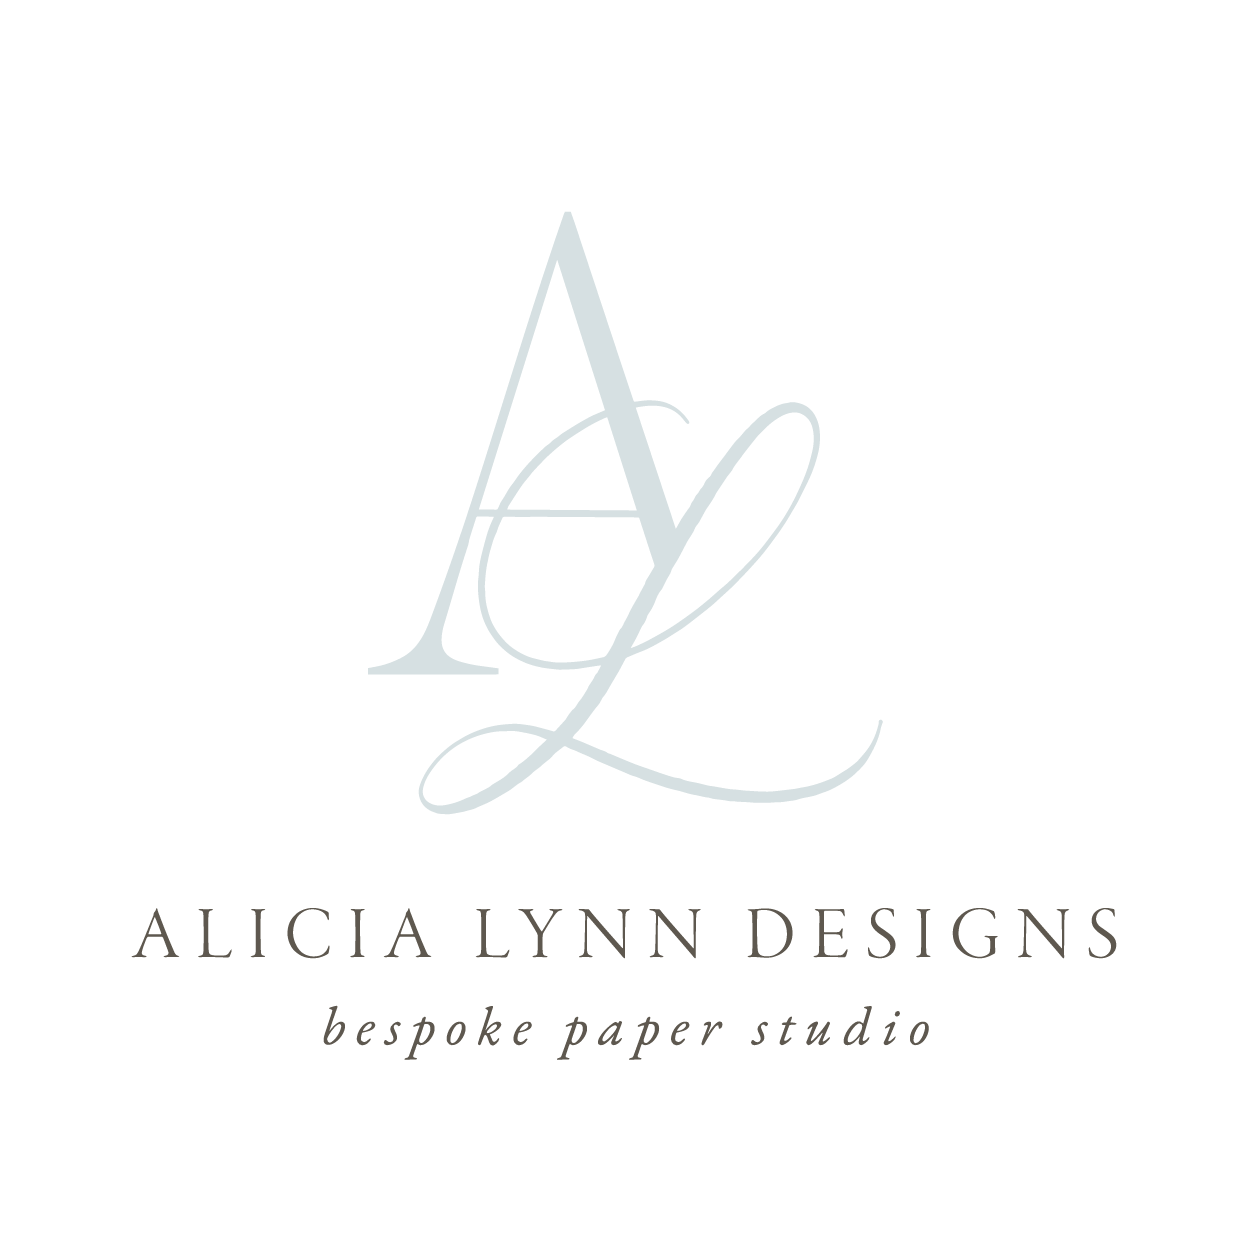 Alicia Lynn Designs